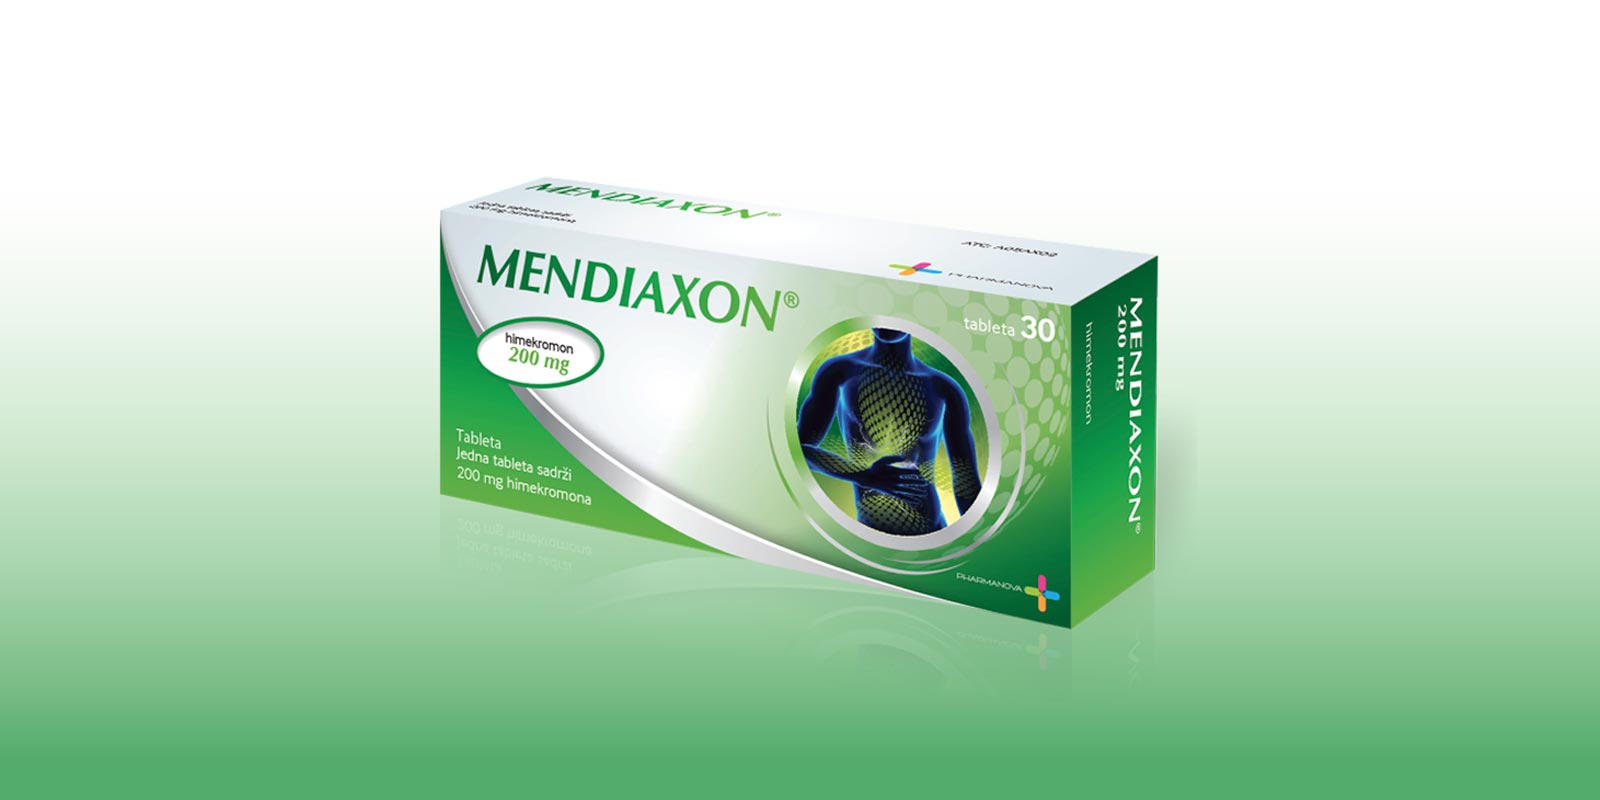 Mediaxon-1600x800